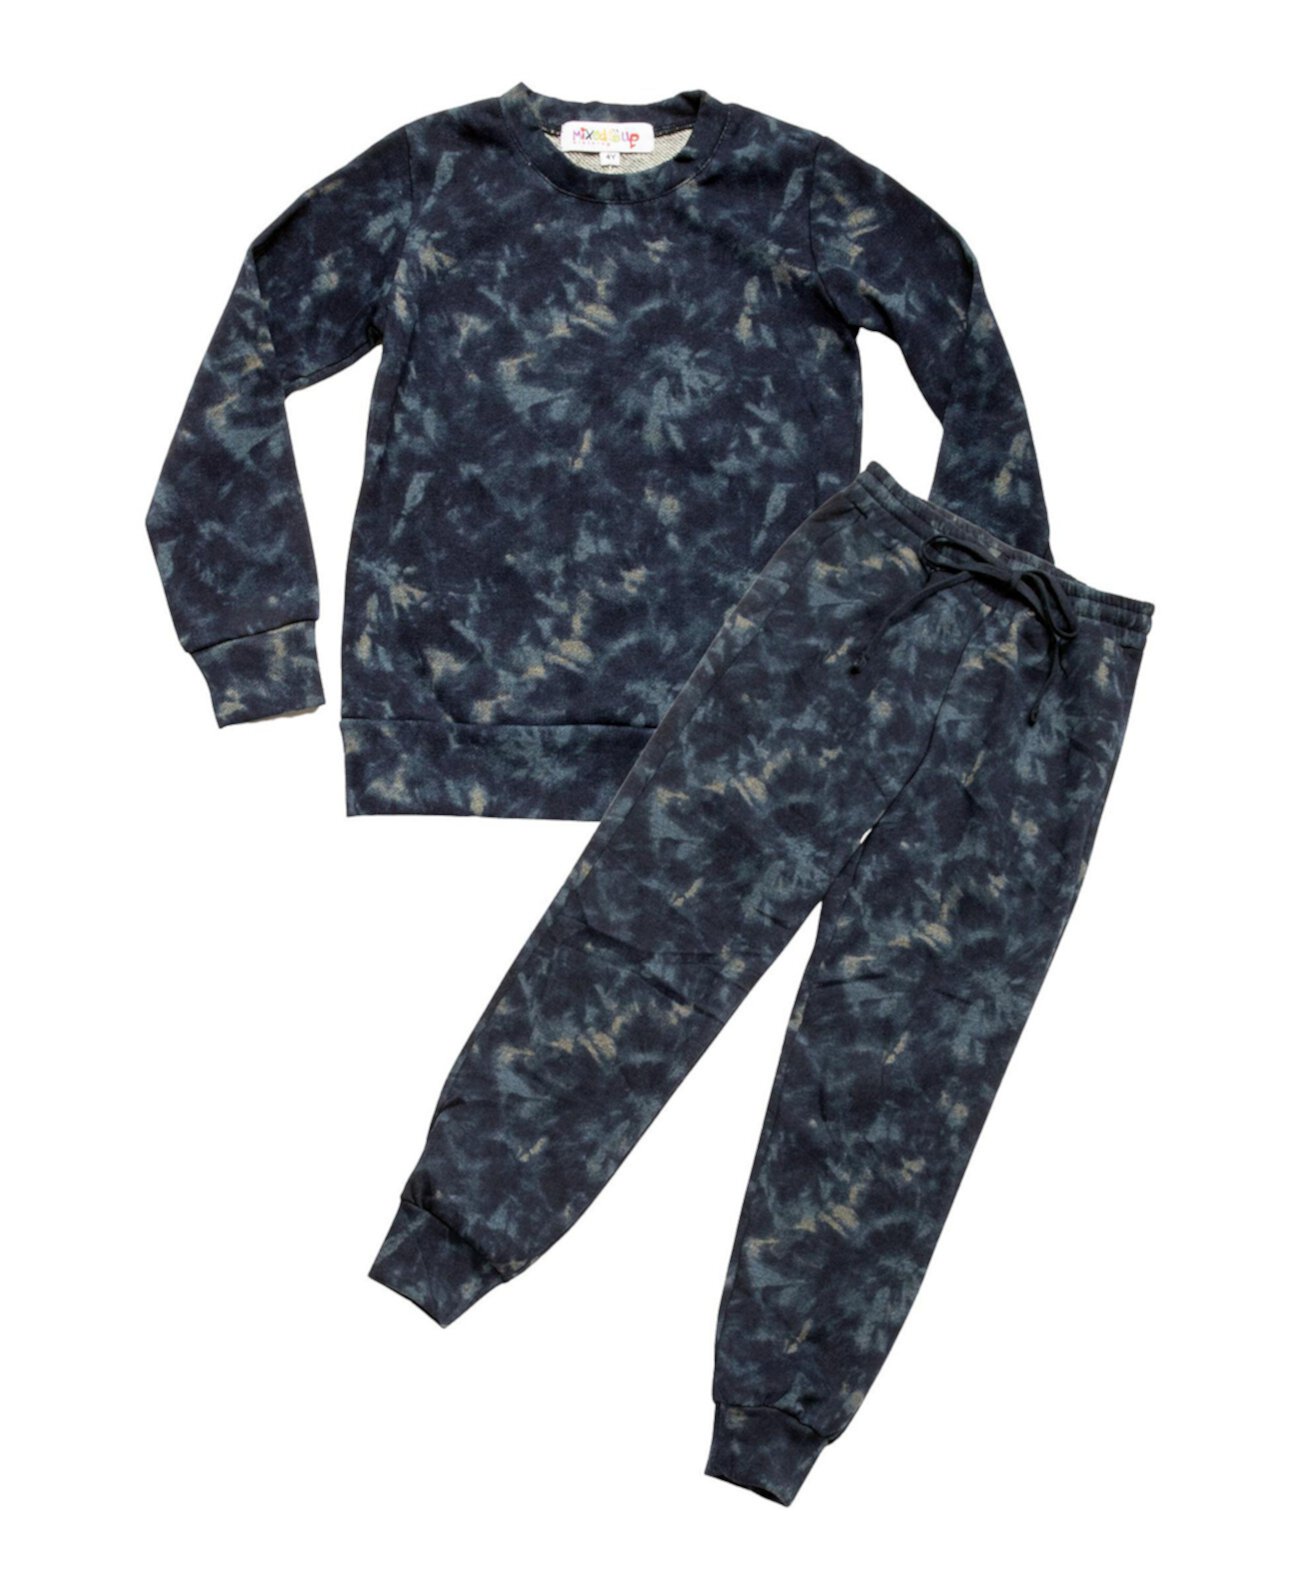 Спортивные штаны Easy Pull-On для Big Boys, джоггеры и толстовка, комплект из 2 предметов Mixed Up Clothing